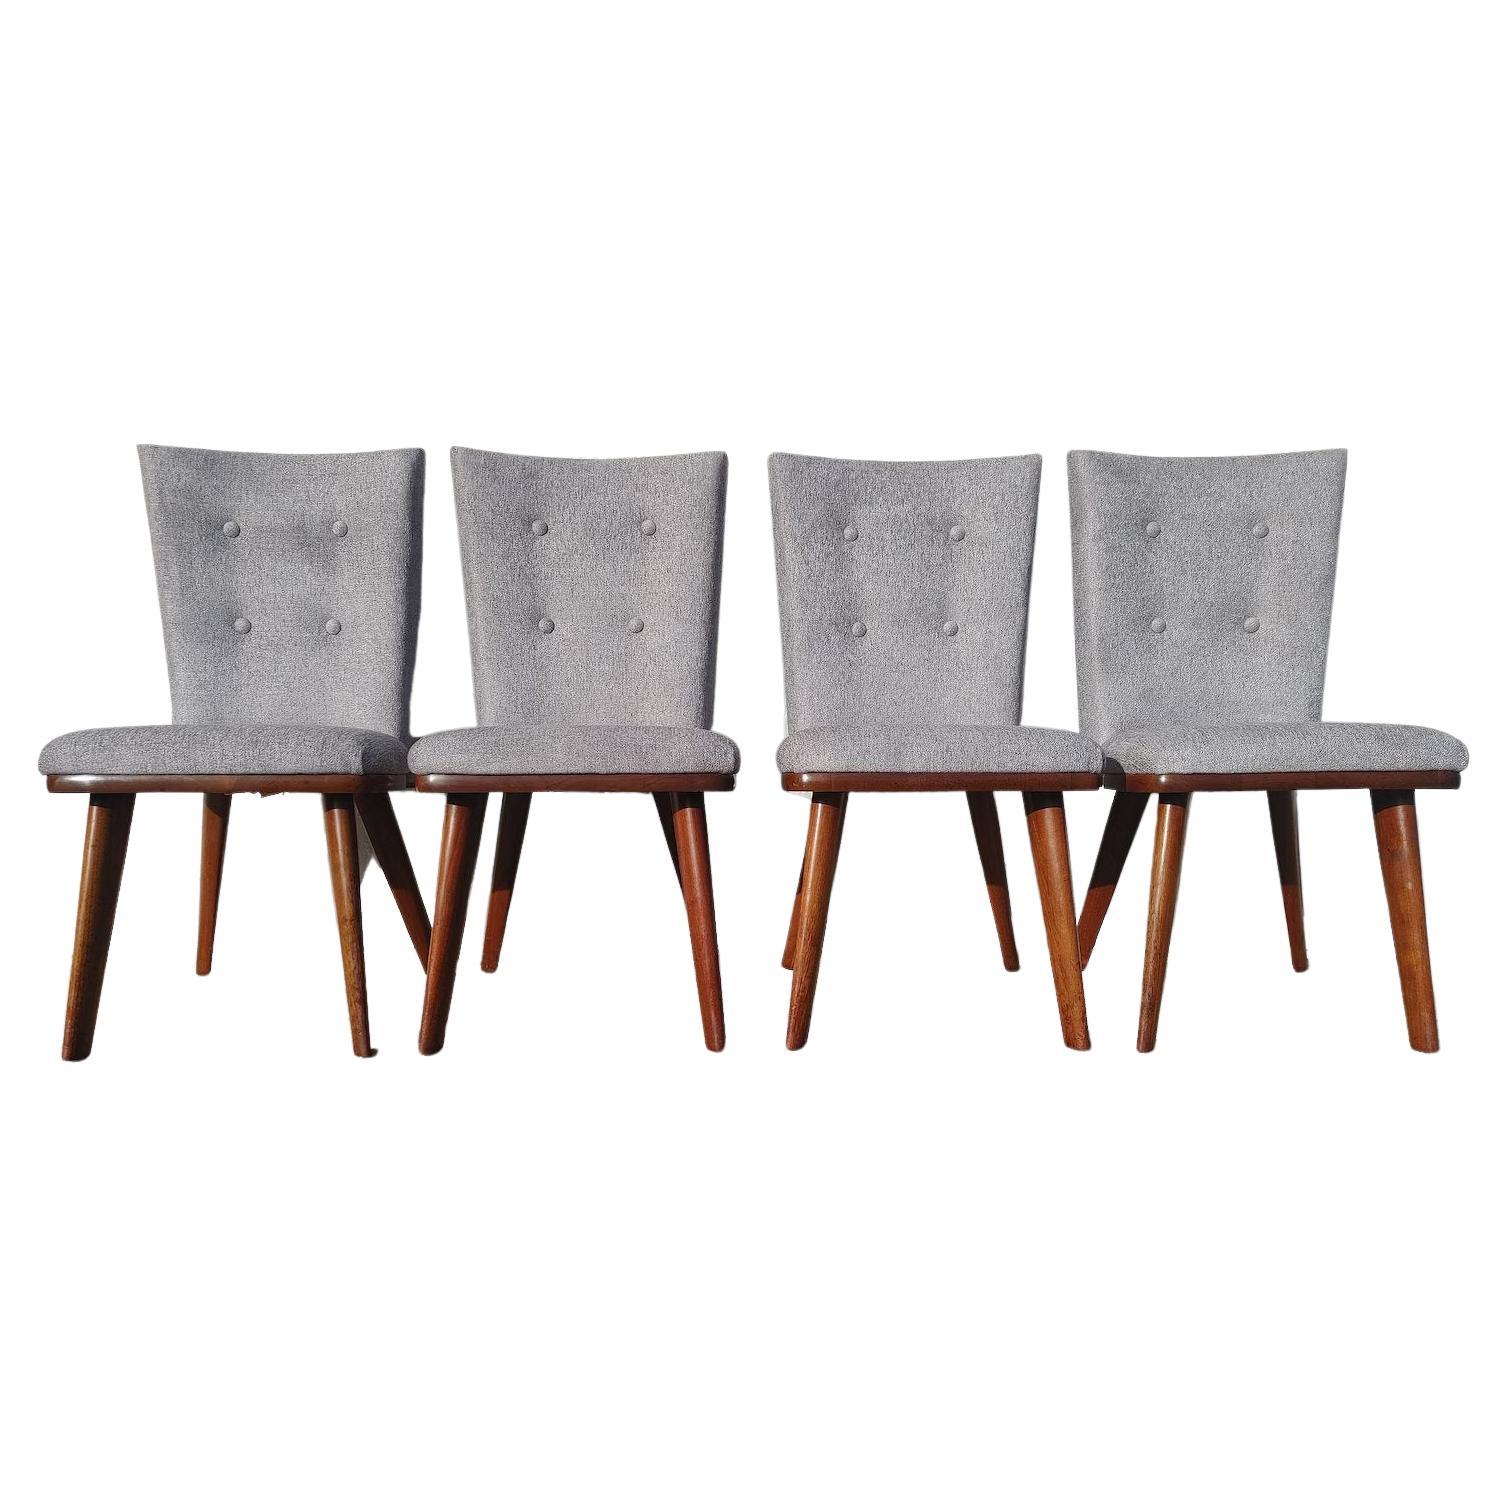 Set of 4 Mid Century Modern Solid Walnut Chairs by Bissman